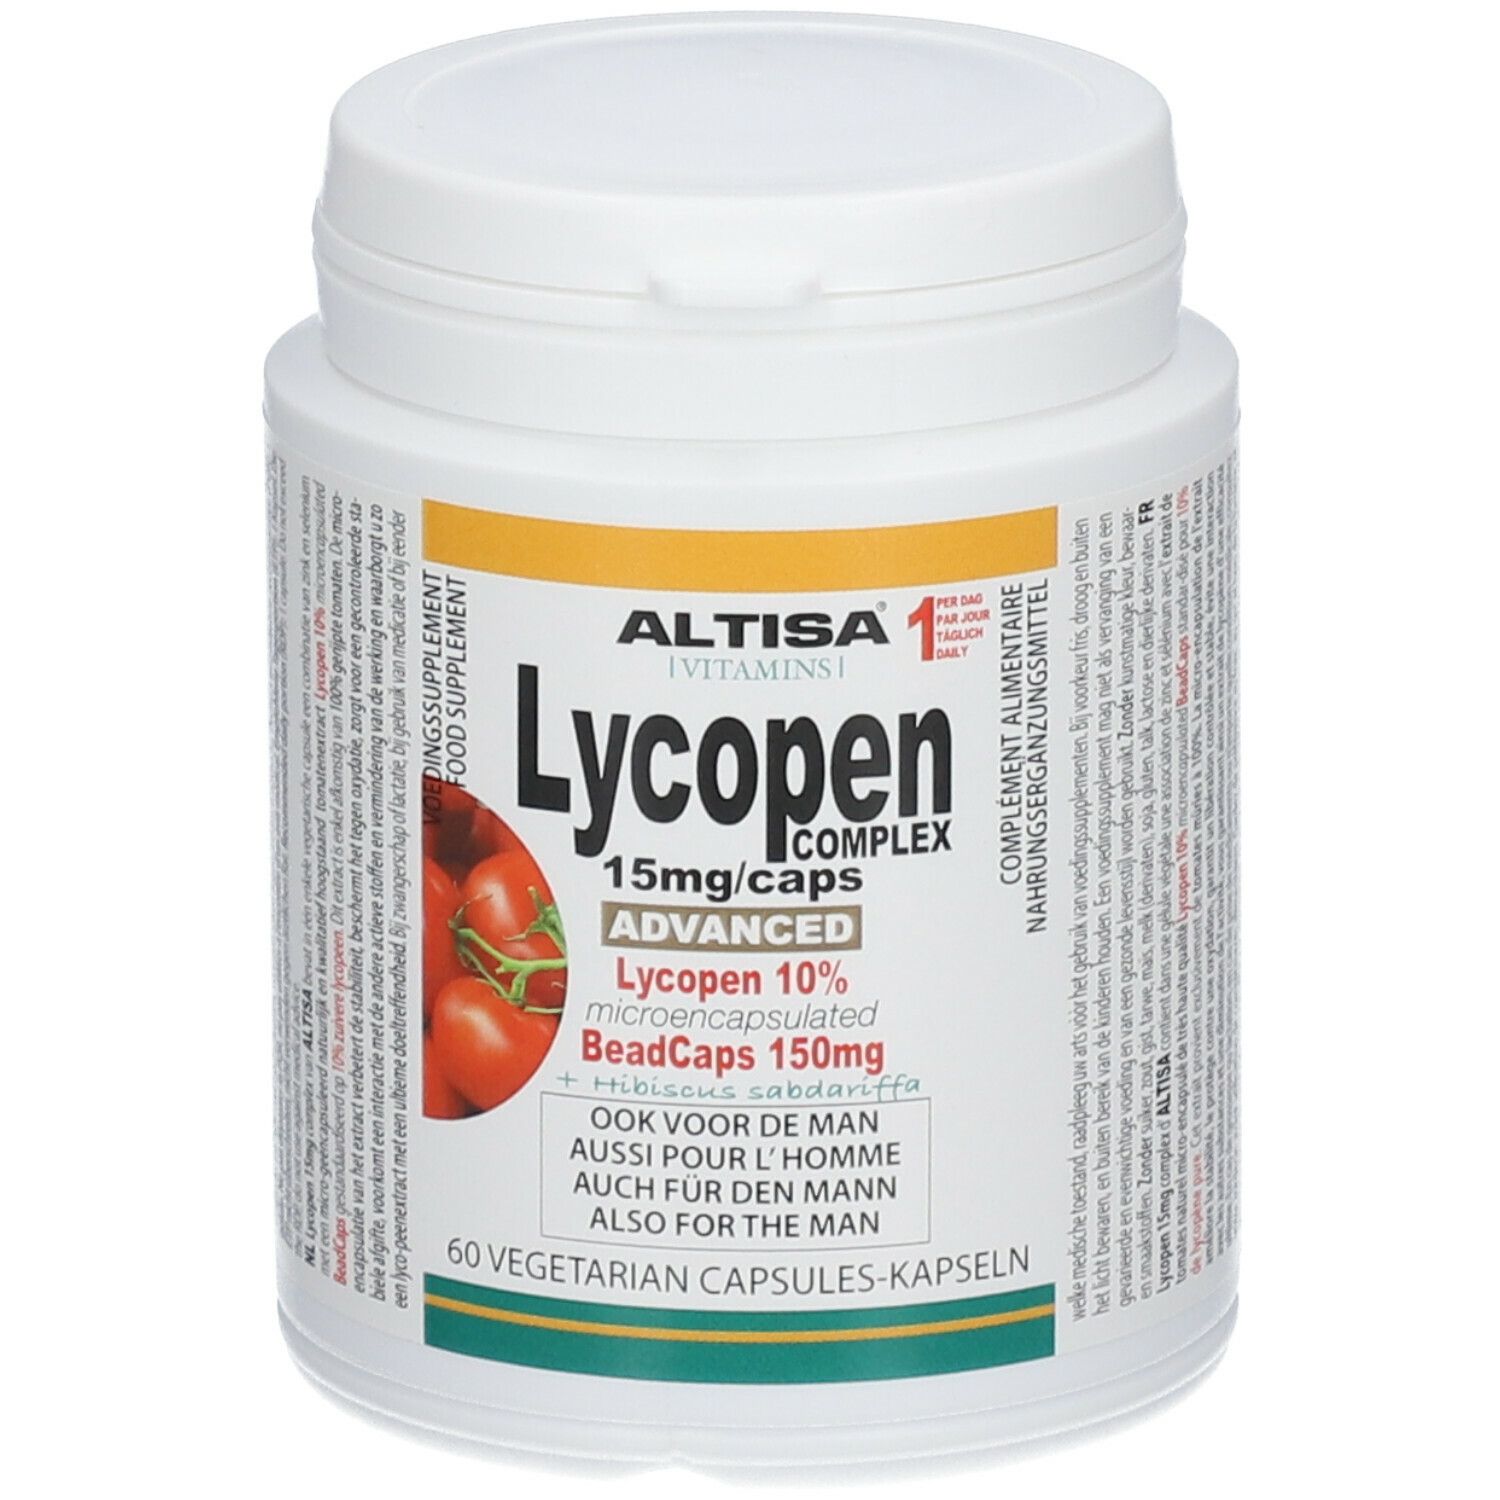 Altisa® Lycopen Complex Advanced